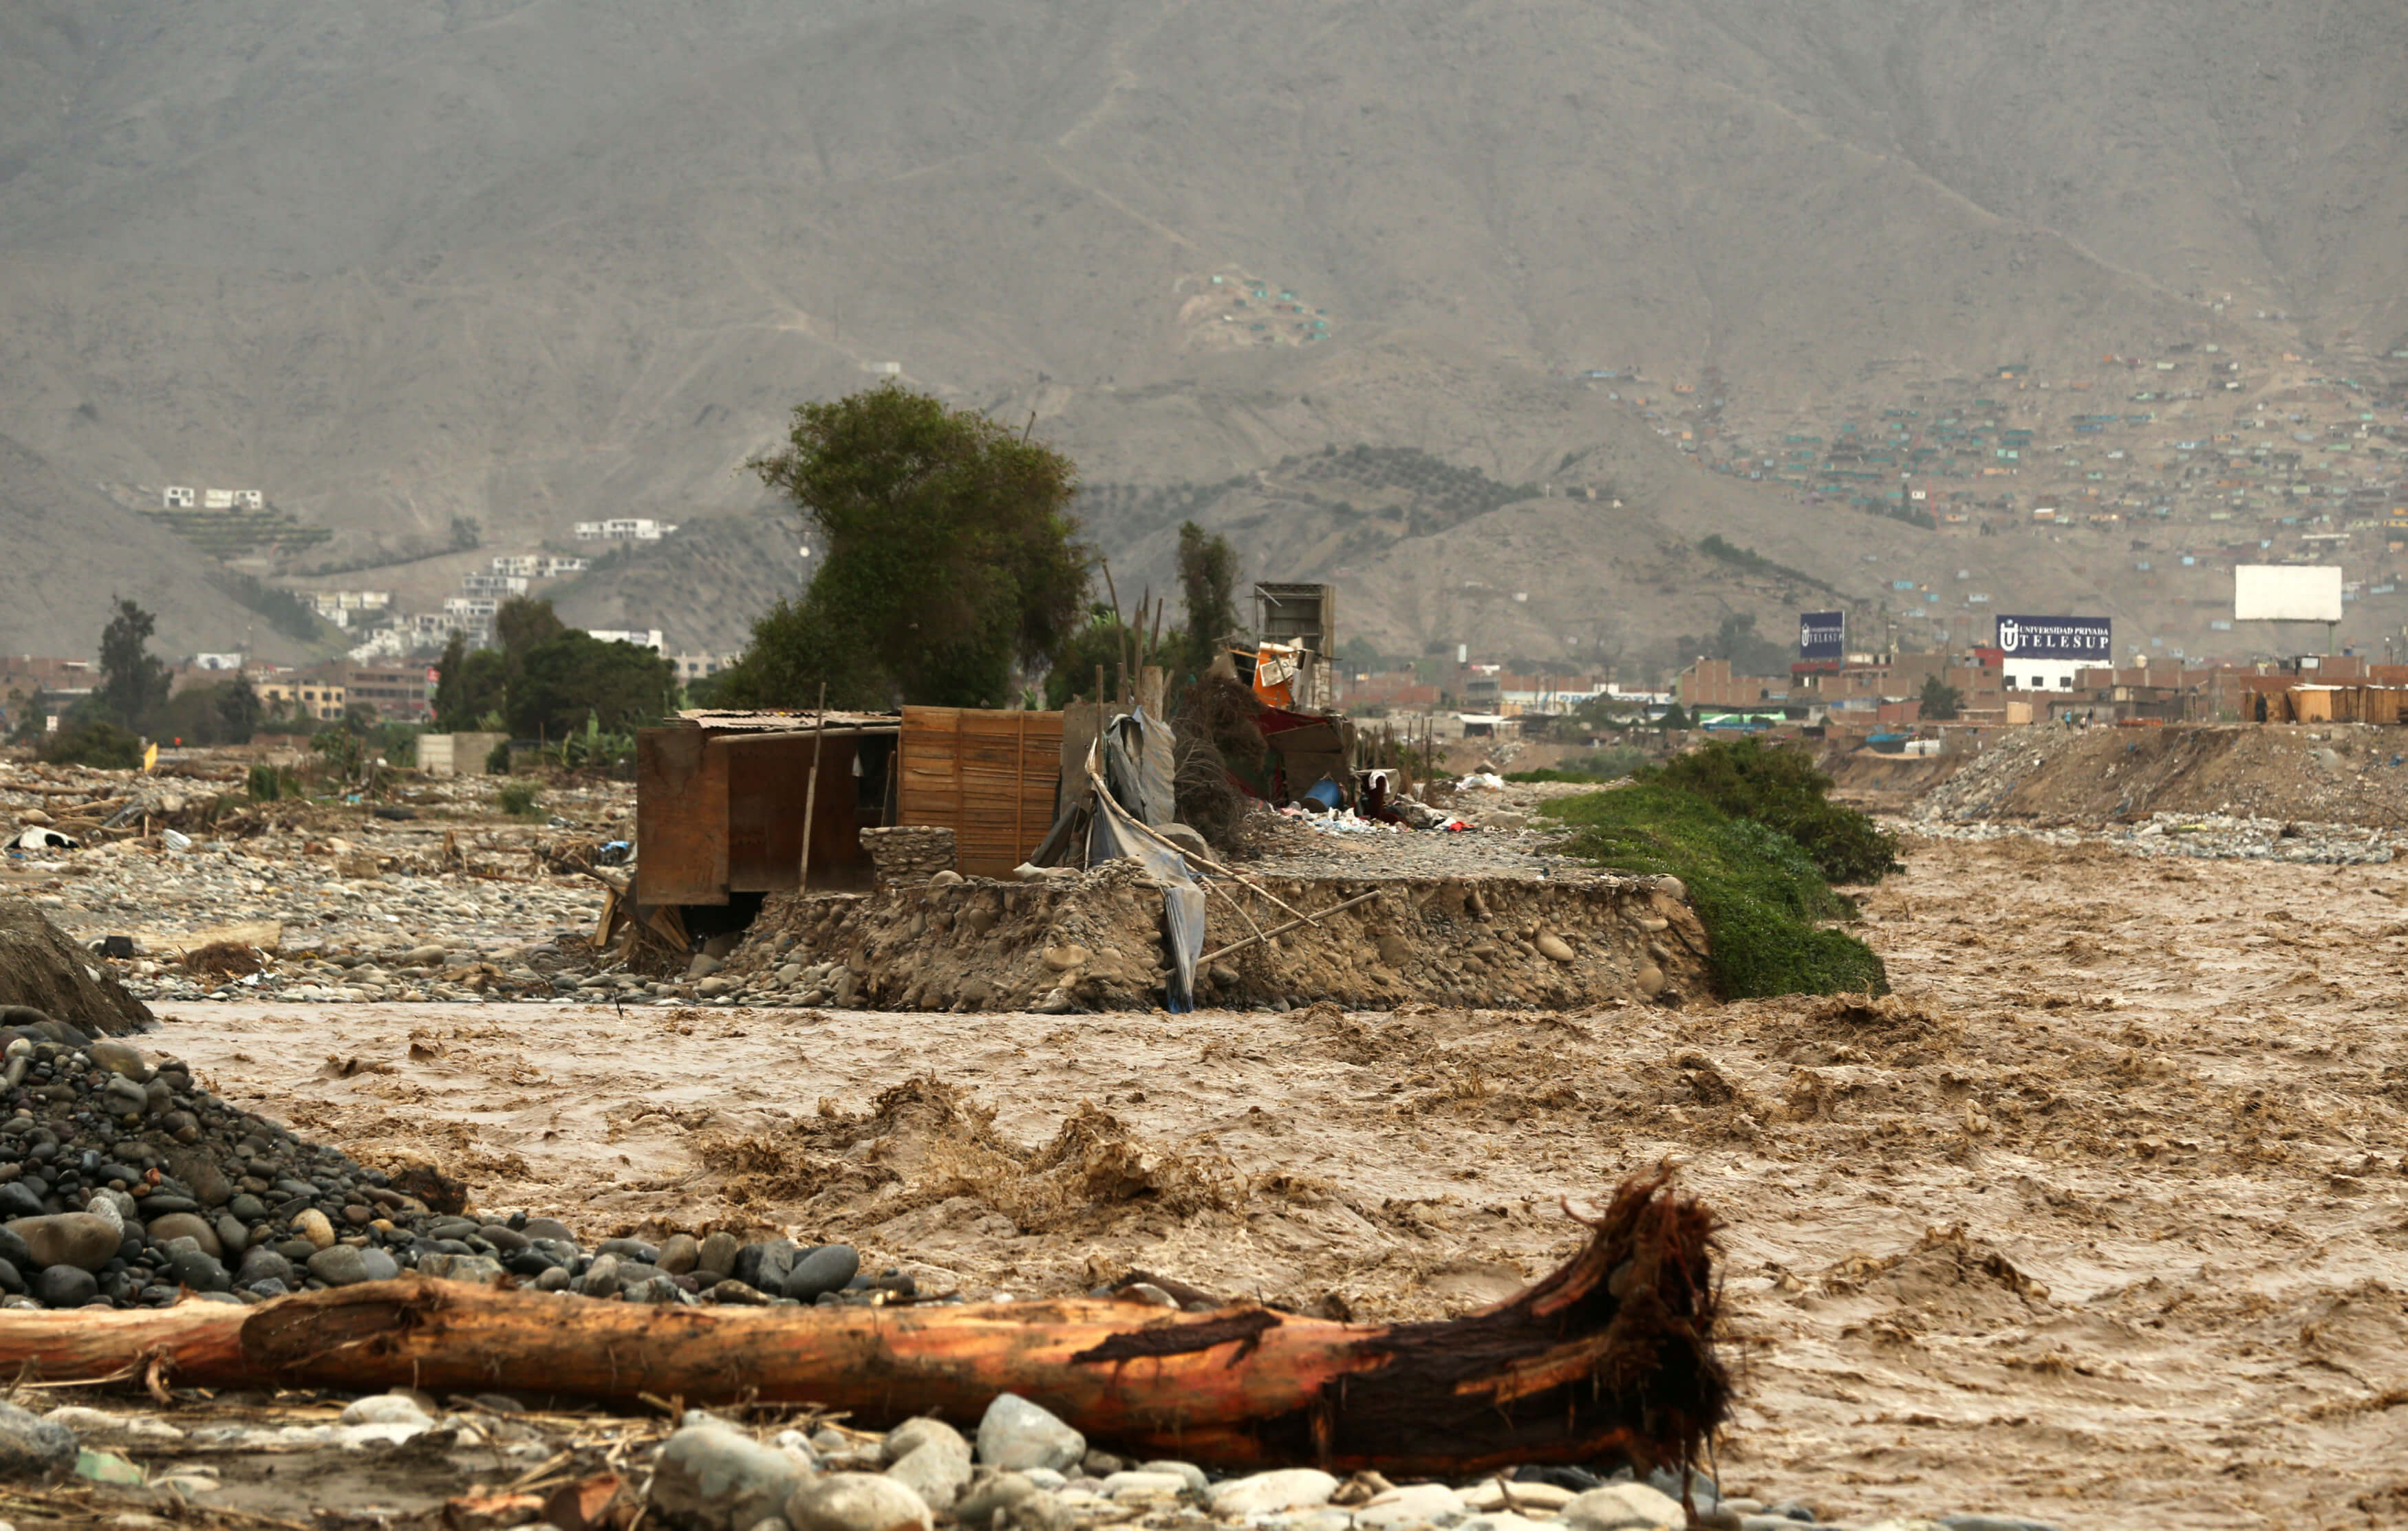 Una casa destruida se ve al lado del río Rimac tras las lluvias torrenciales que han causado inundaciones y destrucción generalizada en Huachipa, Lima. (Reuters)